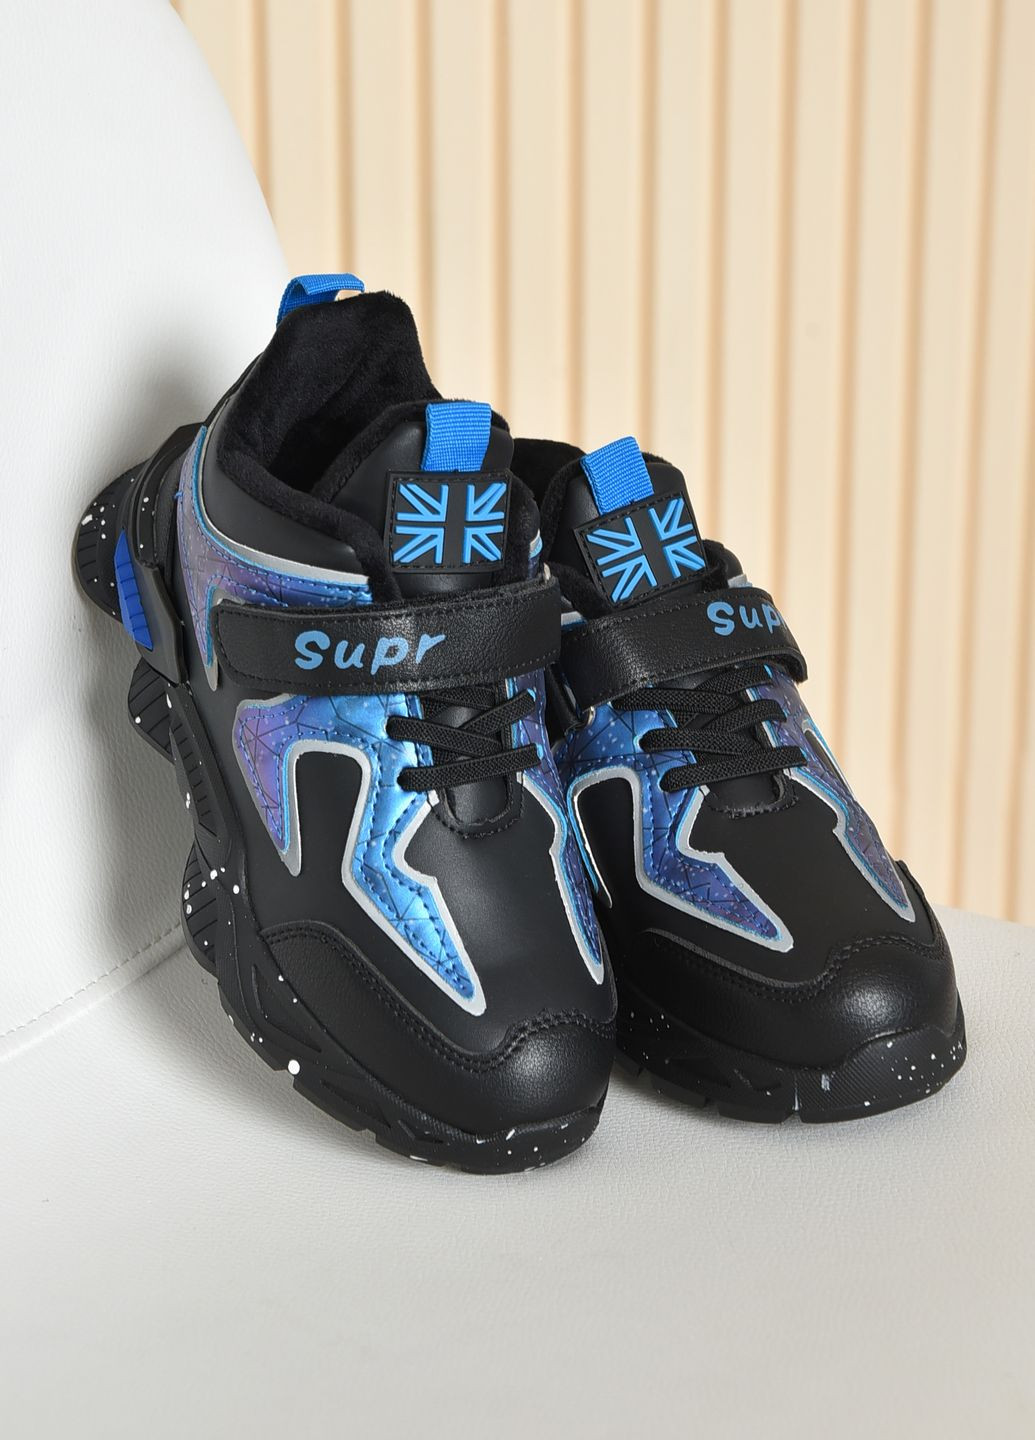 Чорні осінні кросівки дитячі для дівчинки демісезонні чорного кольору з синіми вставками Let's Shop